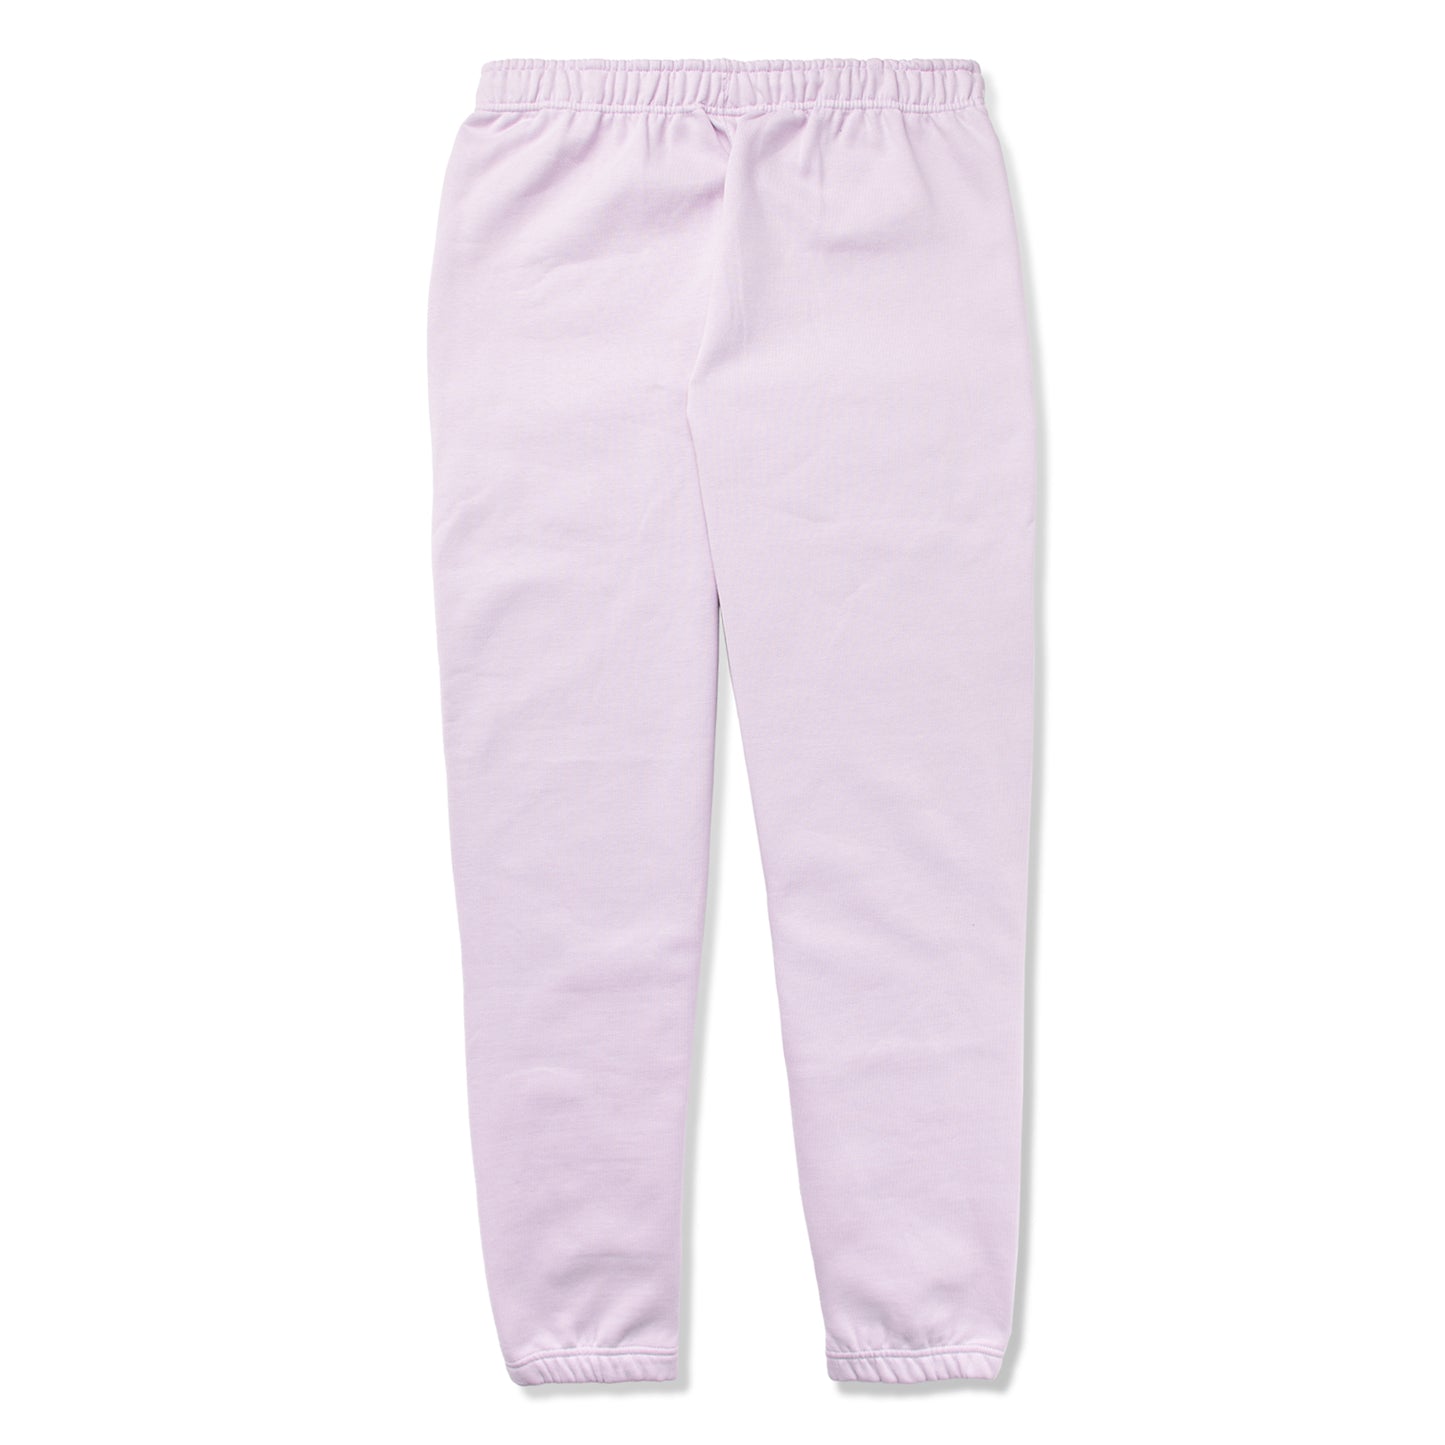 Nike Solo Swoosh Men's Fleece Pants, Doll/White - CW5460-530 - (S, L, XL,  2XL)